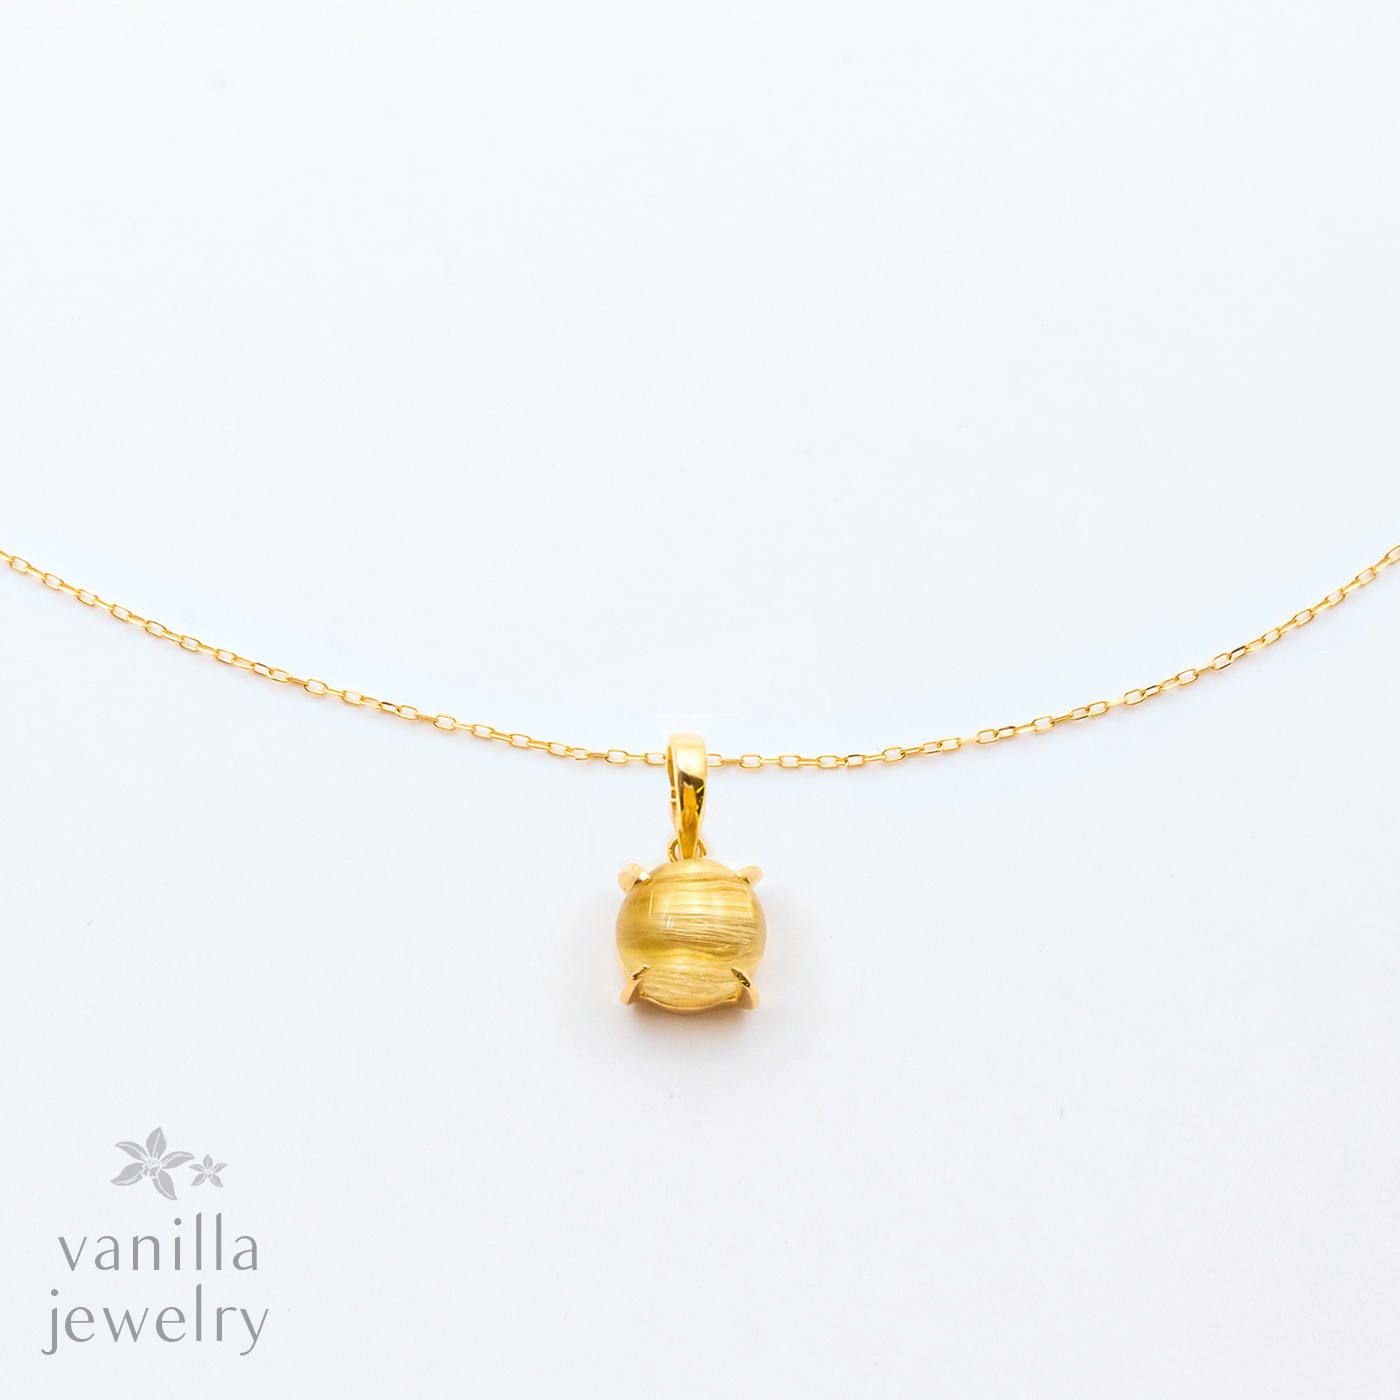 vanilla jewelry - Chelice(シェリス) / デザインネックレス | vanilla 